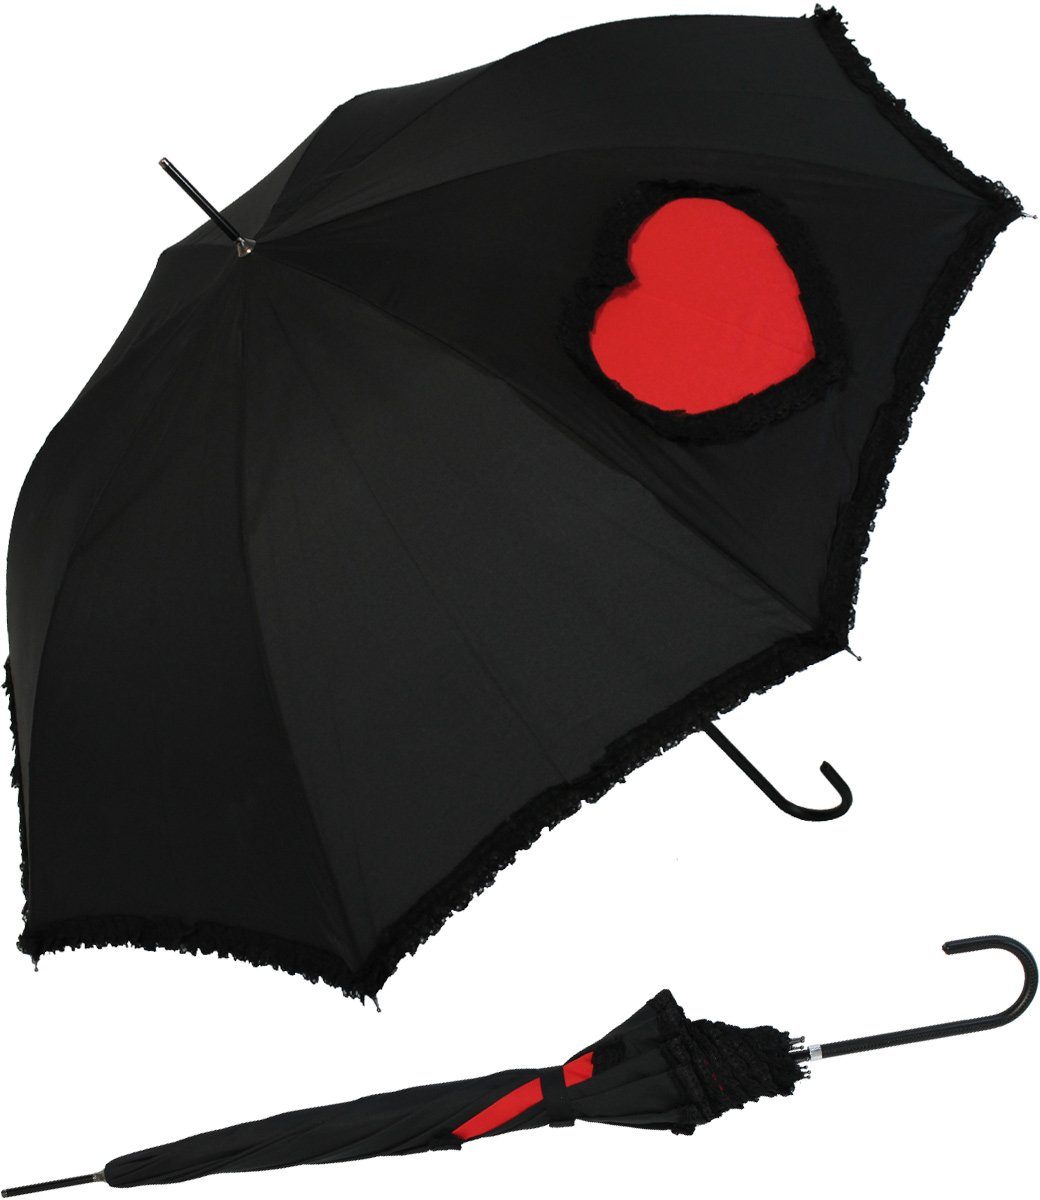 doppler® Langregenschirm mit Auf-Automatik und Rüschensaum - Heart, Herz  und Schirmrand von schwarzen Rüschen umsäumt | Stockschirme